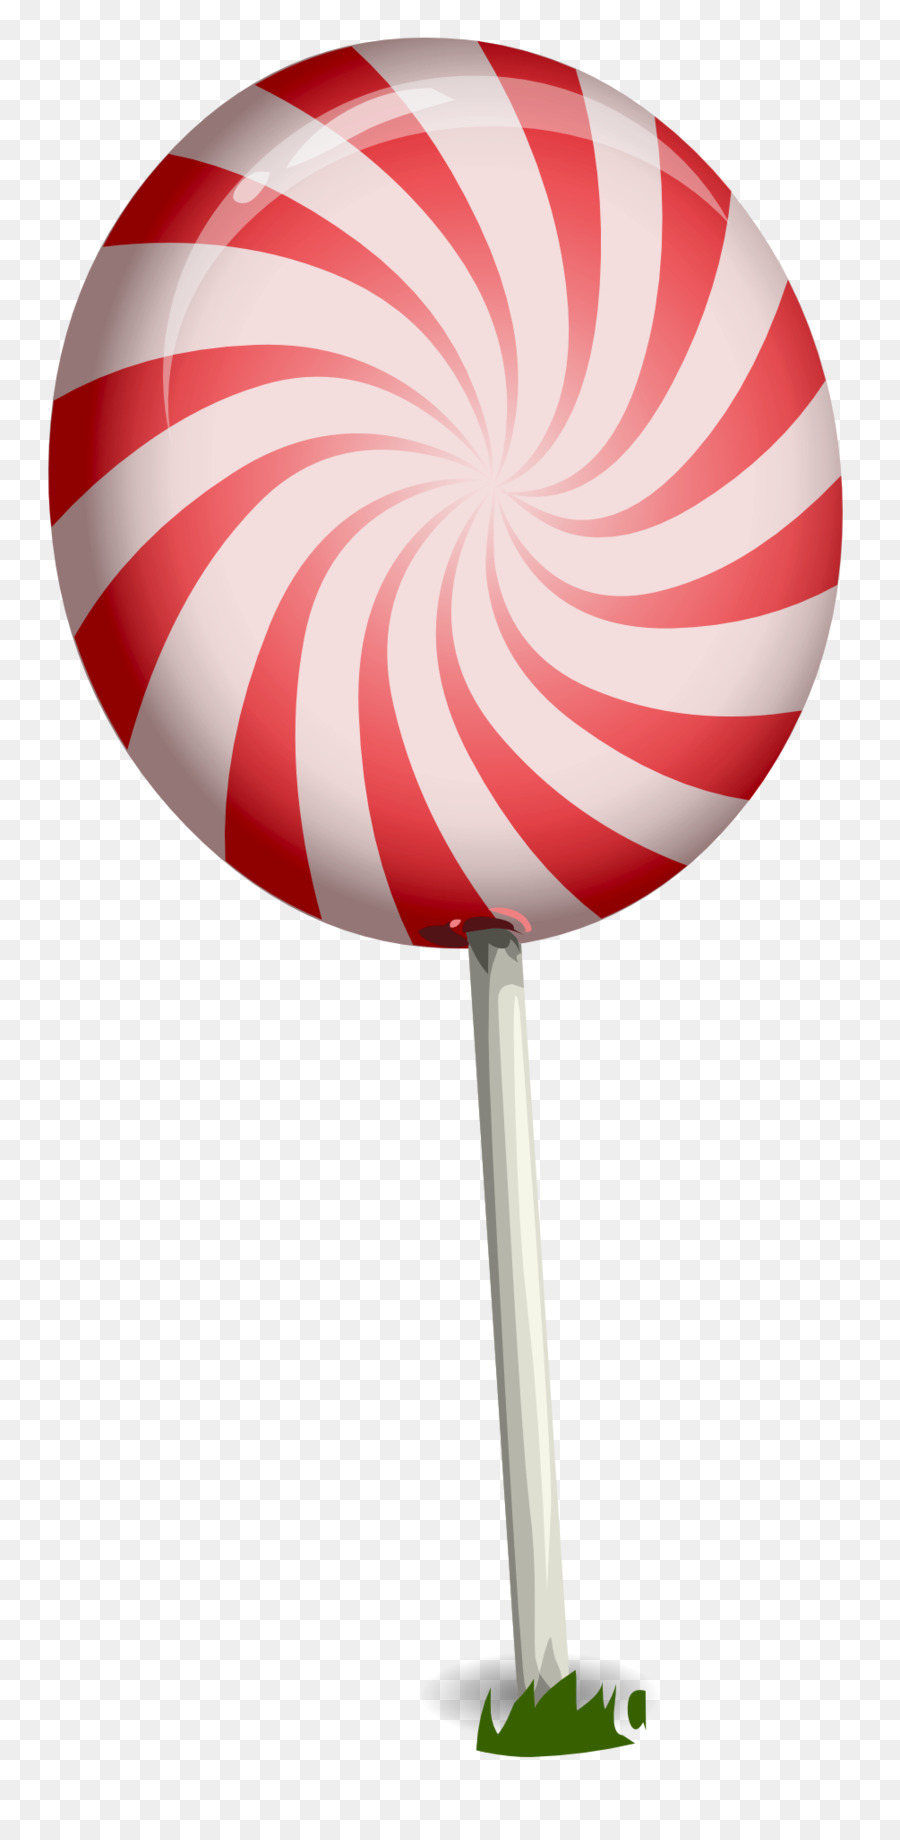 Lollipop Stick candy - Candy Lollipop png download - 1005*2049 - Free Transparent Lollipop png Download.